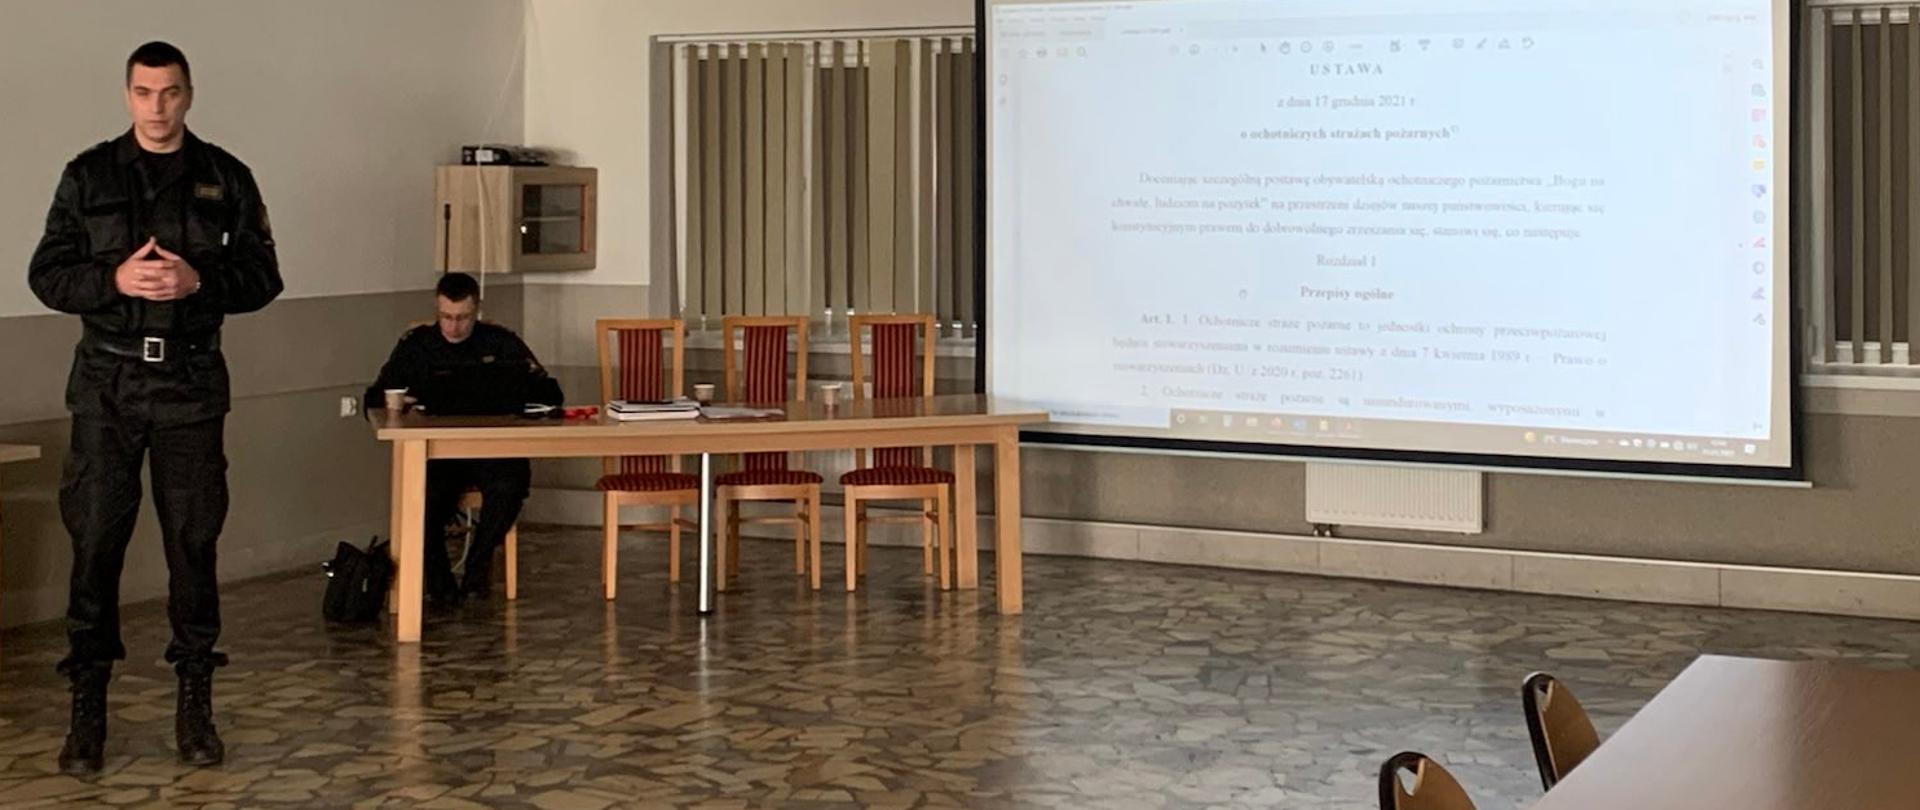 Na zdjęciu widać Komendanta Powiatowego PSP w Oleśnicy w pozycji stojącej, który prowadzi spotkanie w sprawie Ustawy o OSP. Na ekranie rzutnik wyświetla treść ustawy. 